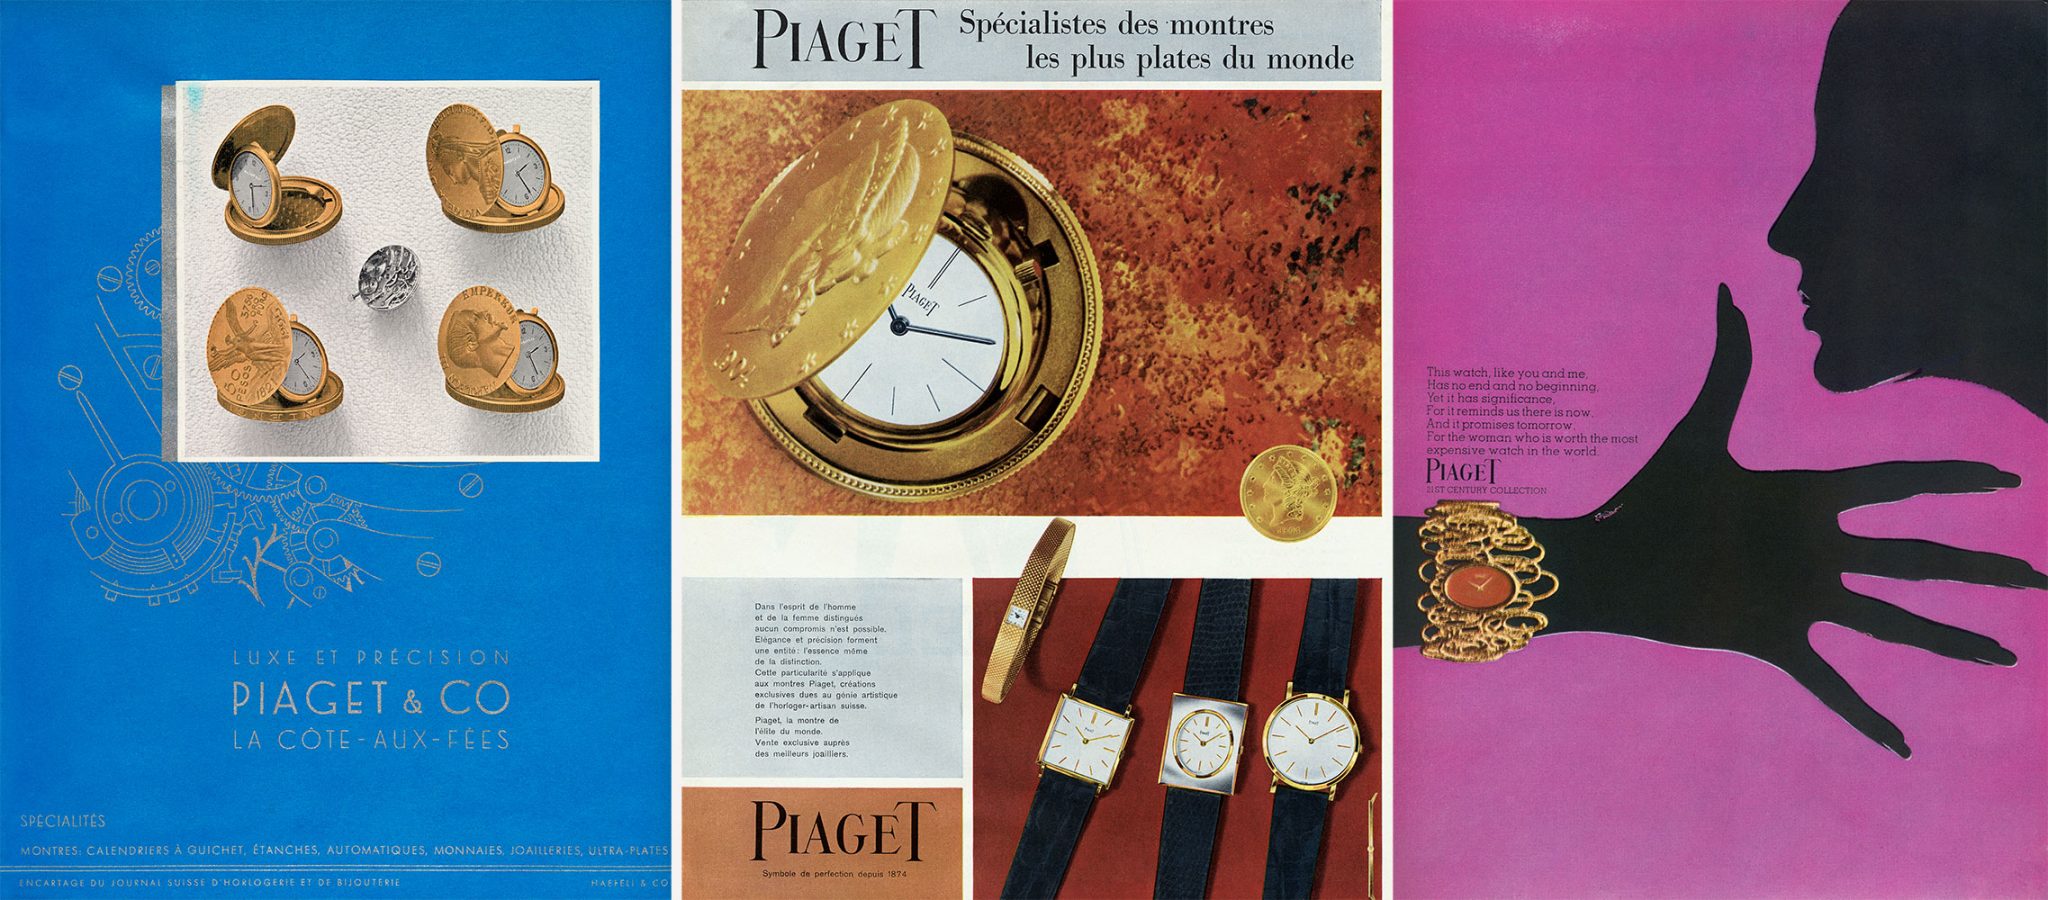 Werbeanzeige-Piaget-1942-1959-und-1969